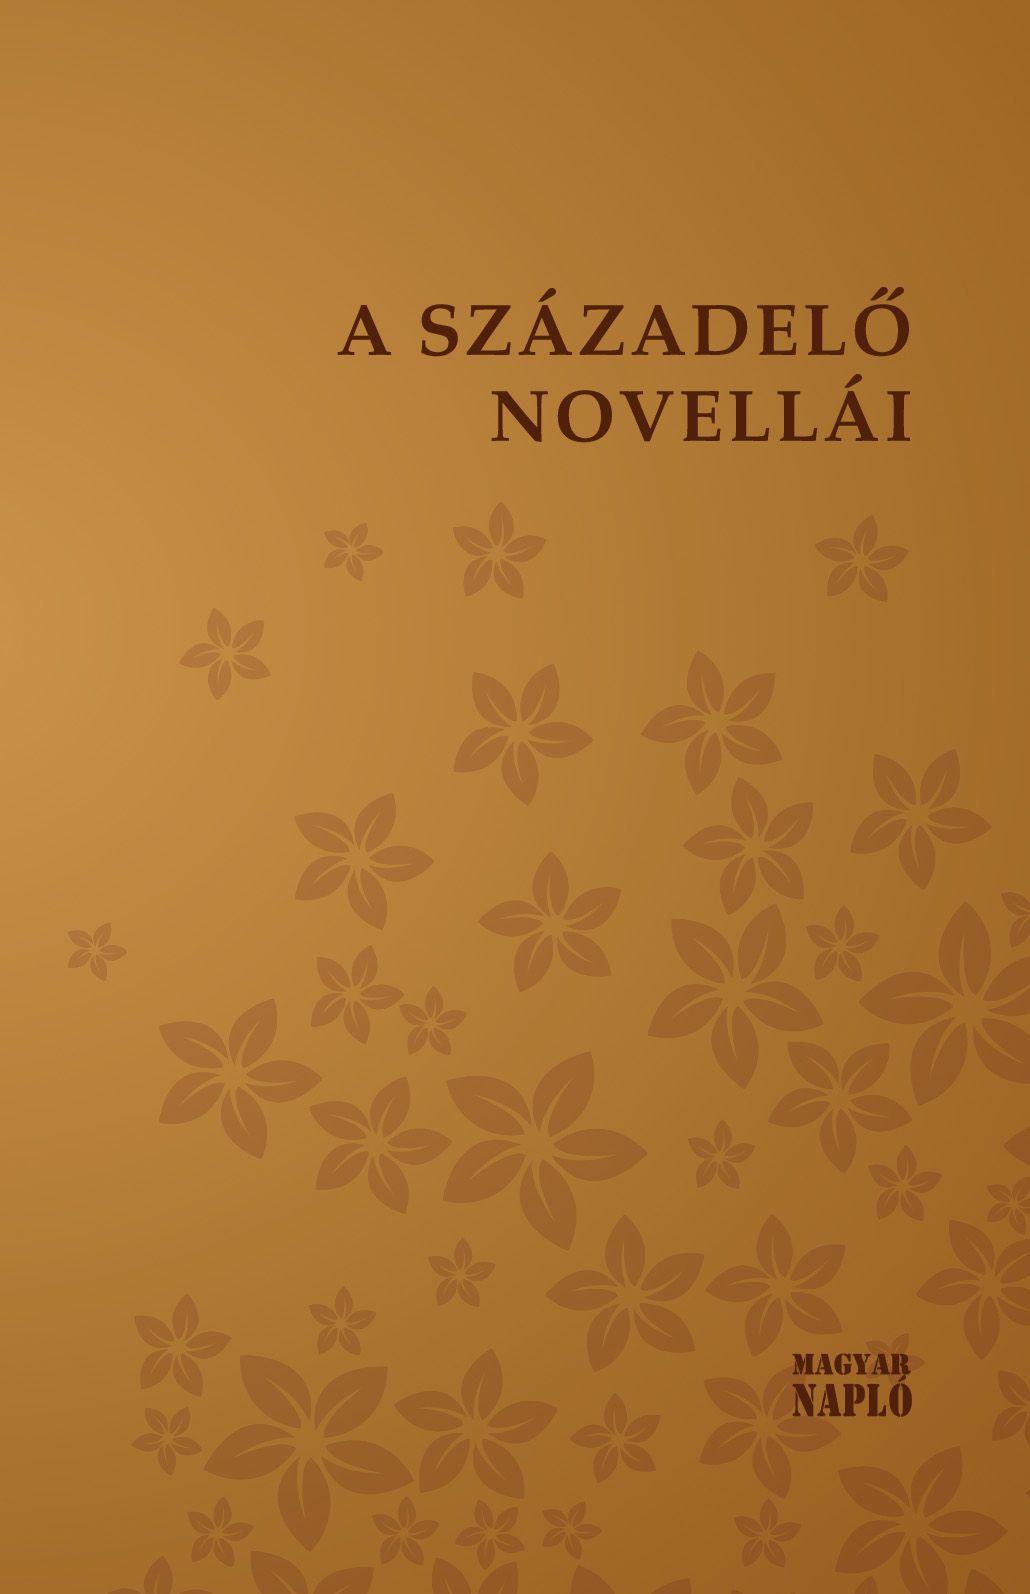  - A Szzadel Novelli